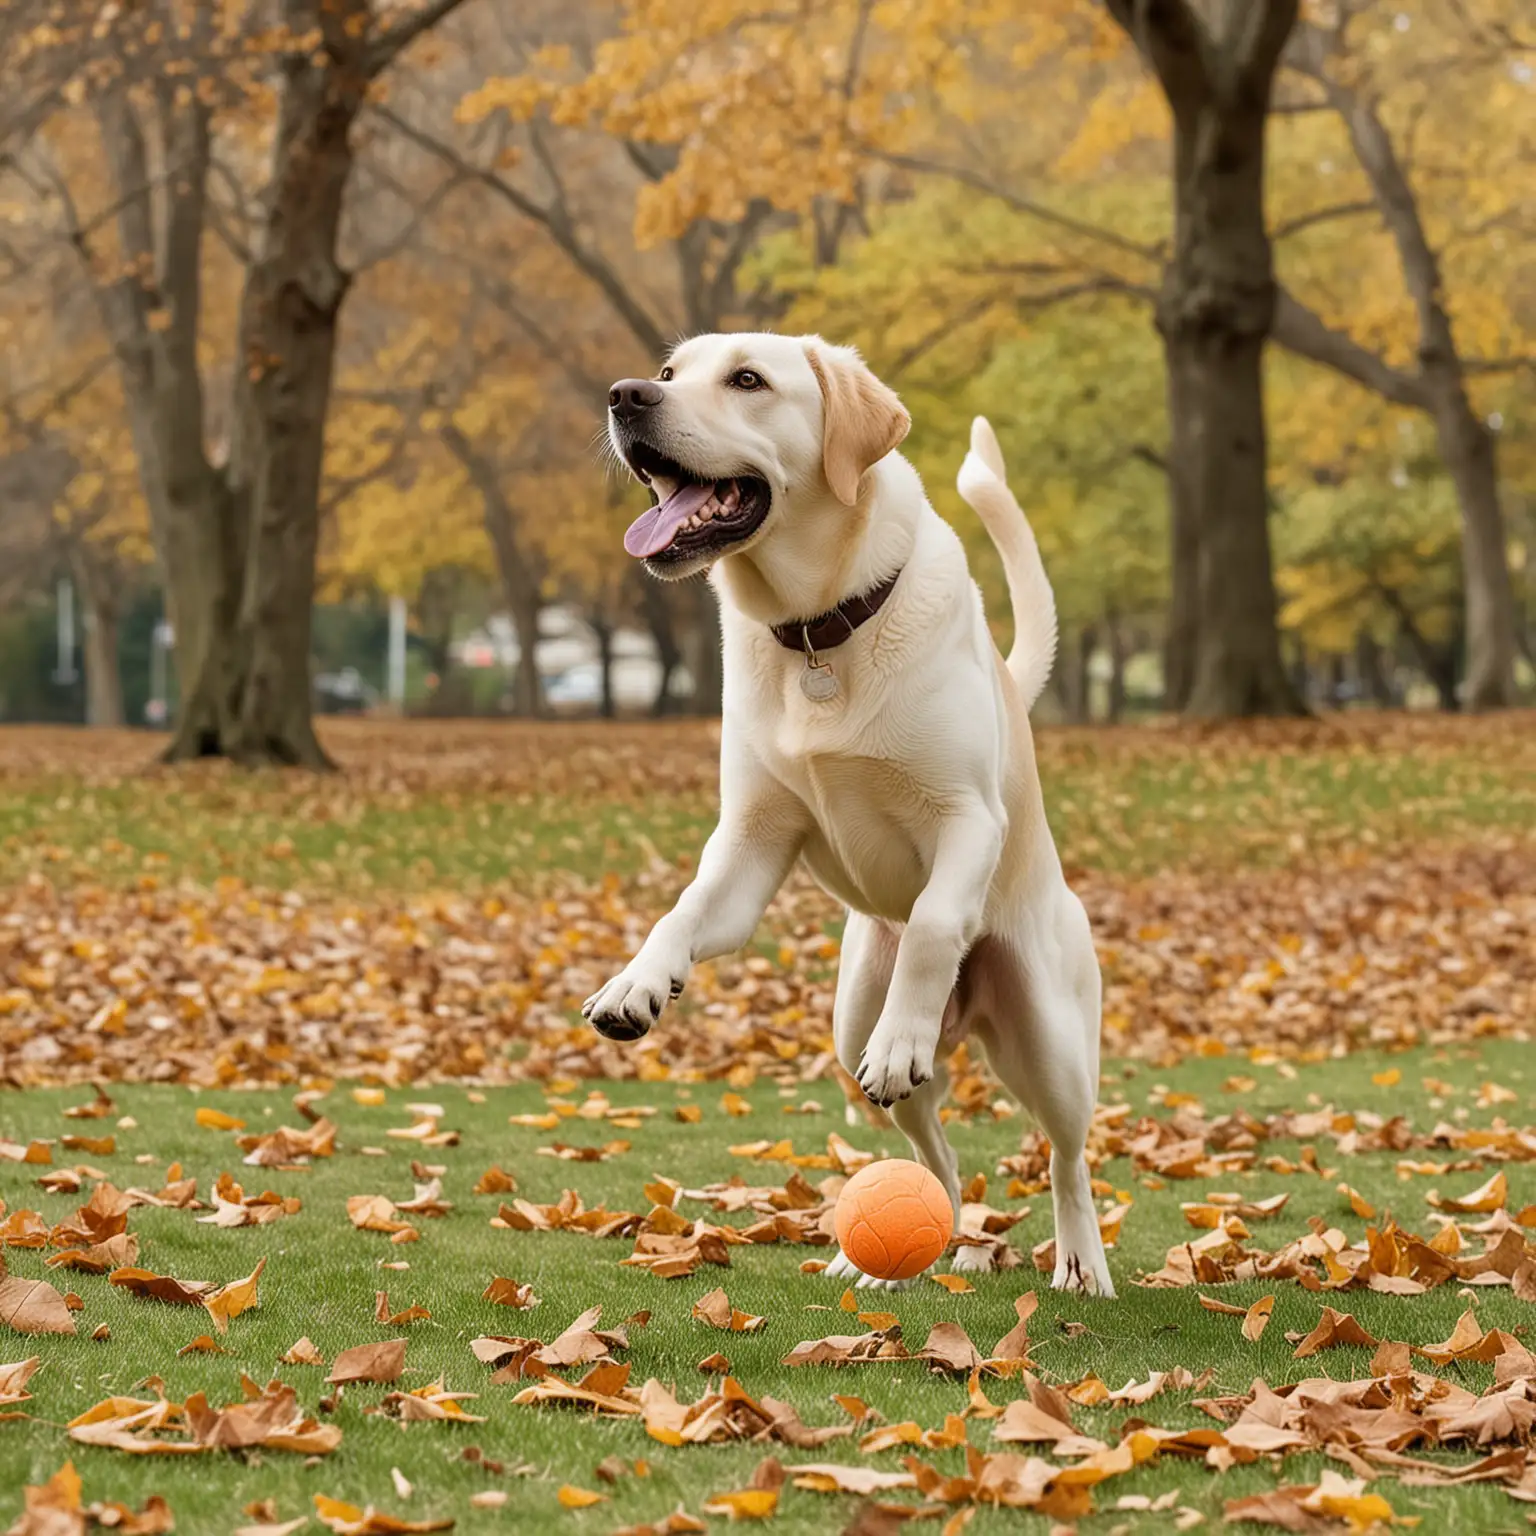 A Labrador Retriever playing fetch in a park.